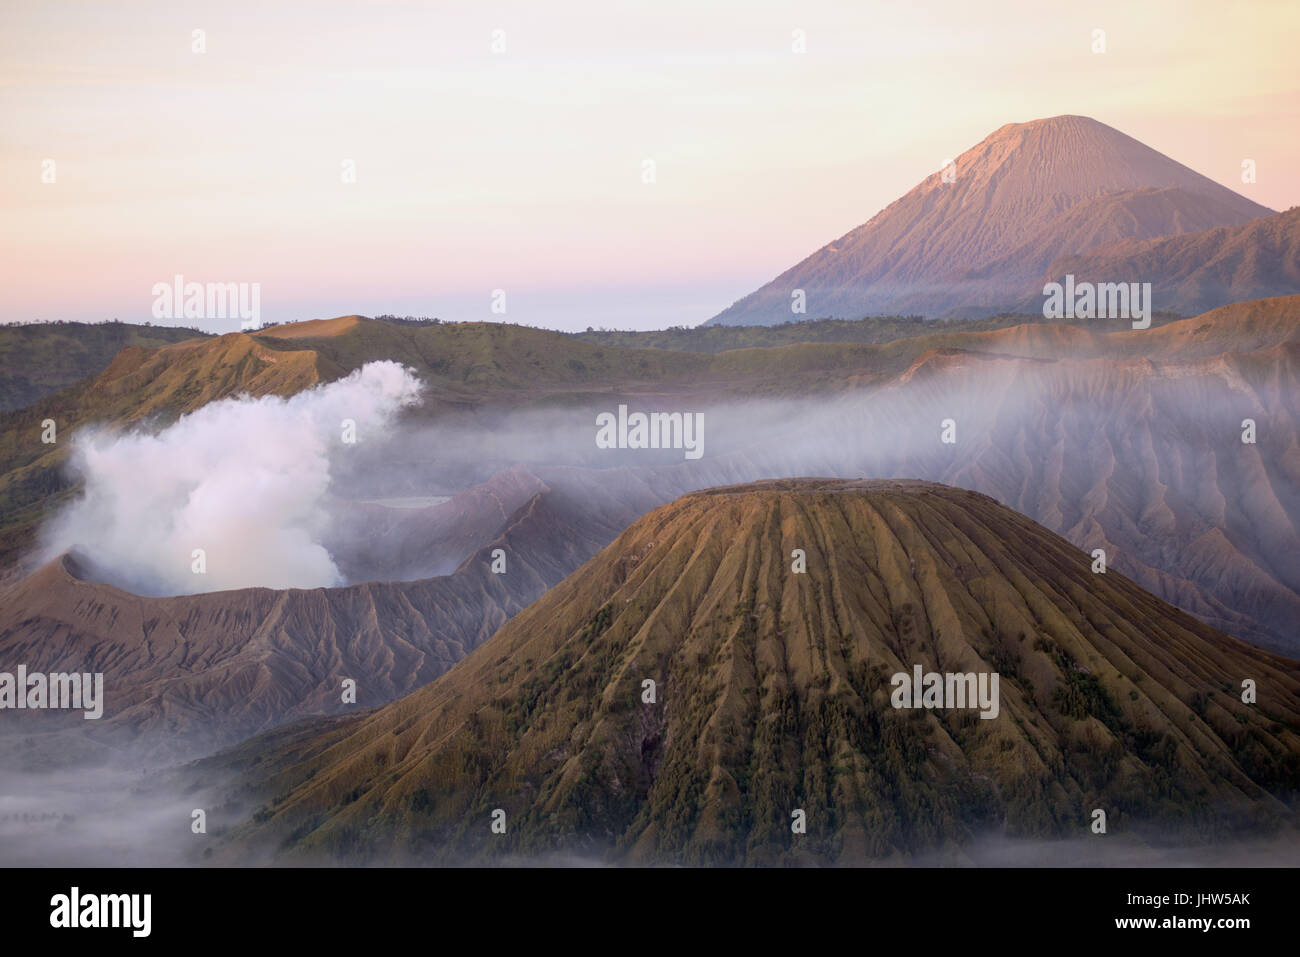 Malerische Aussicht auf Mount Bromo und Mount Semeru aktive Vulkane bei Sonnenaufgang in Ost-Java Indonesien. Stockfoto